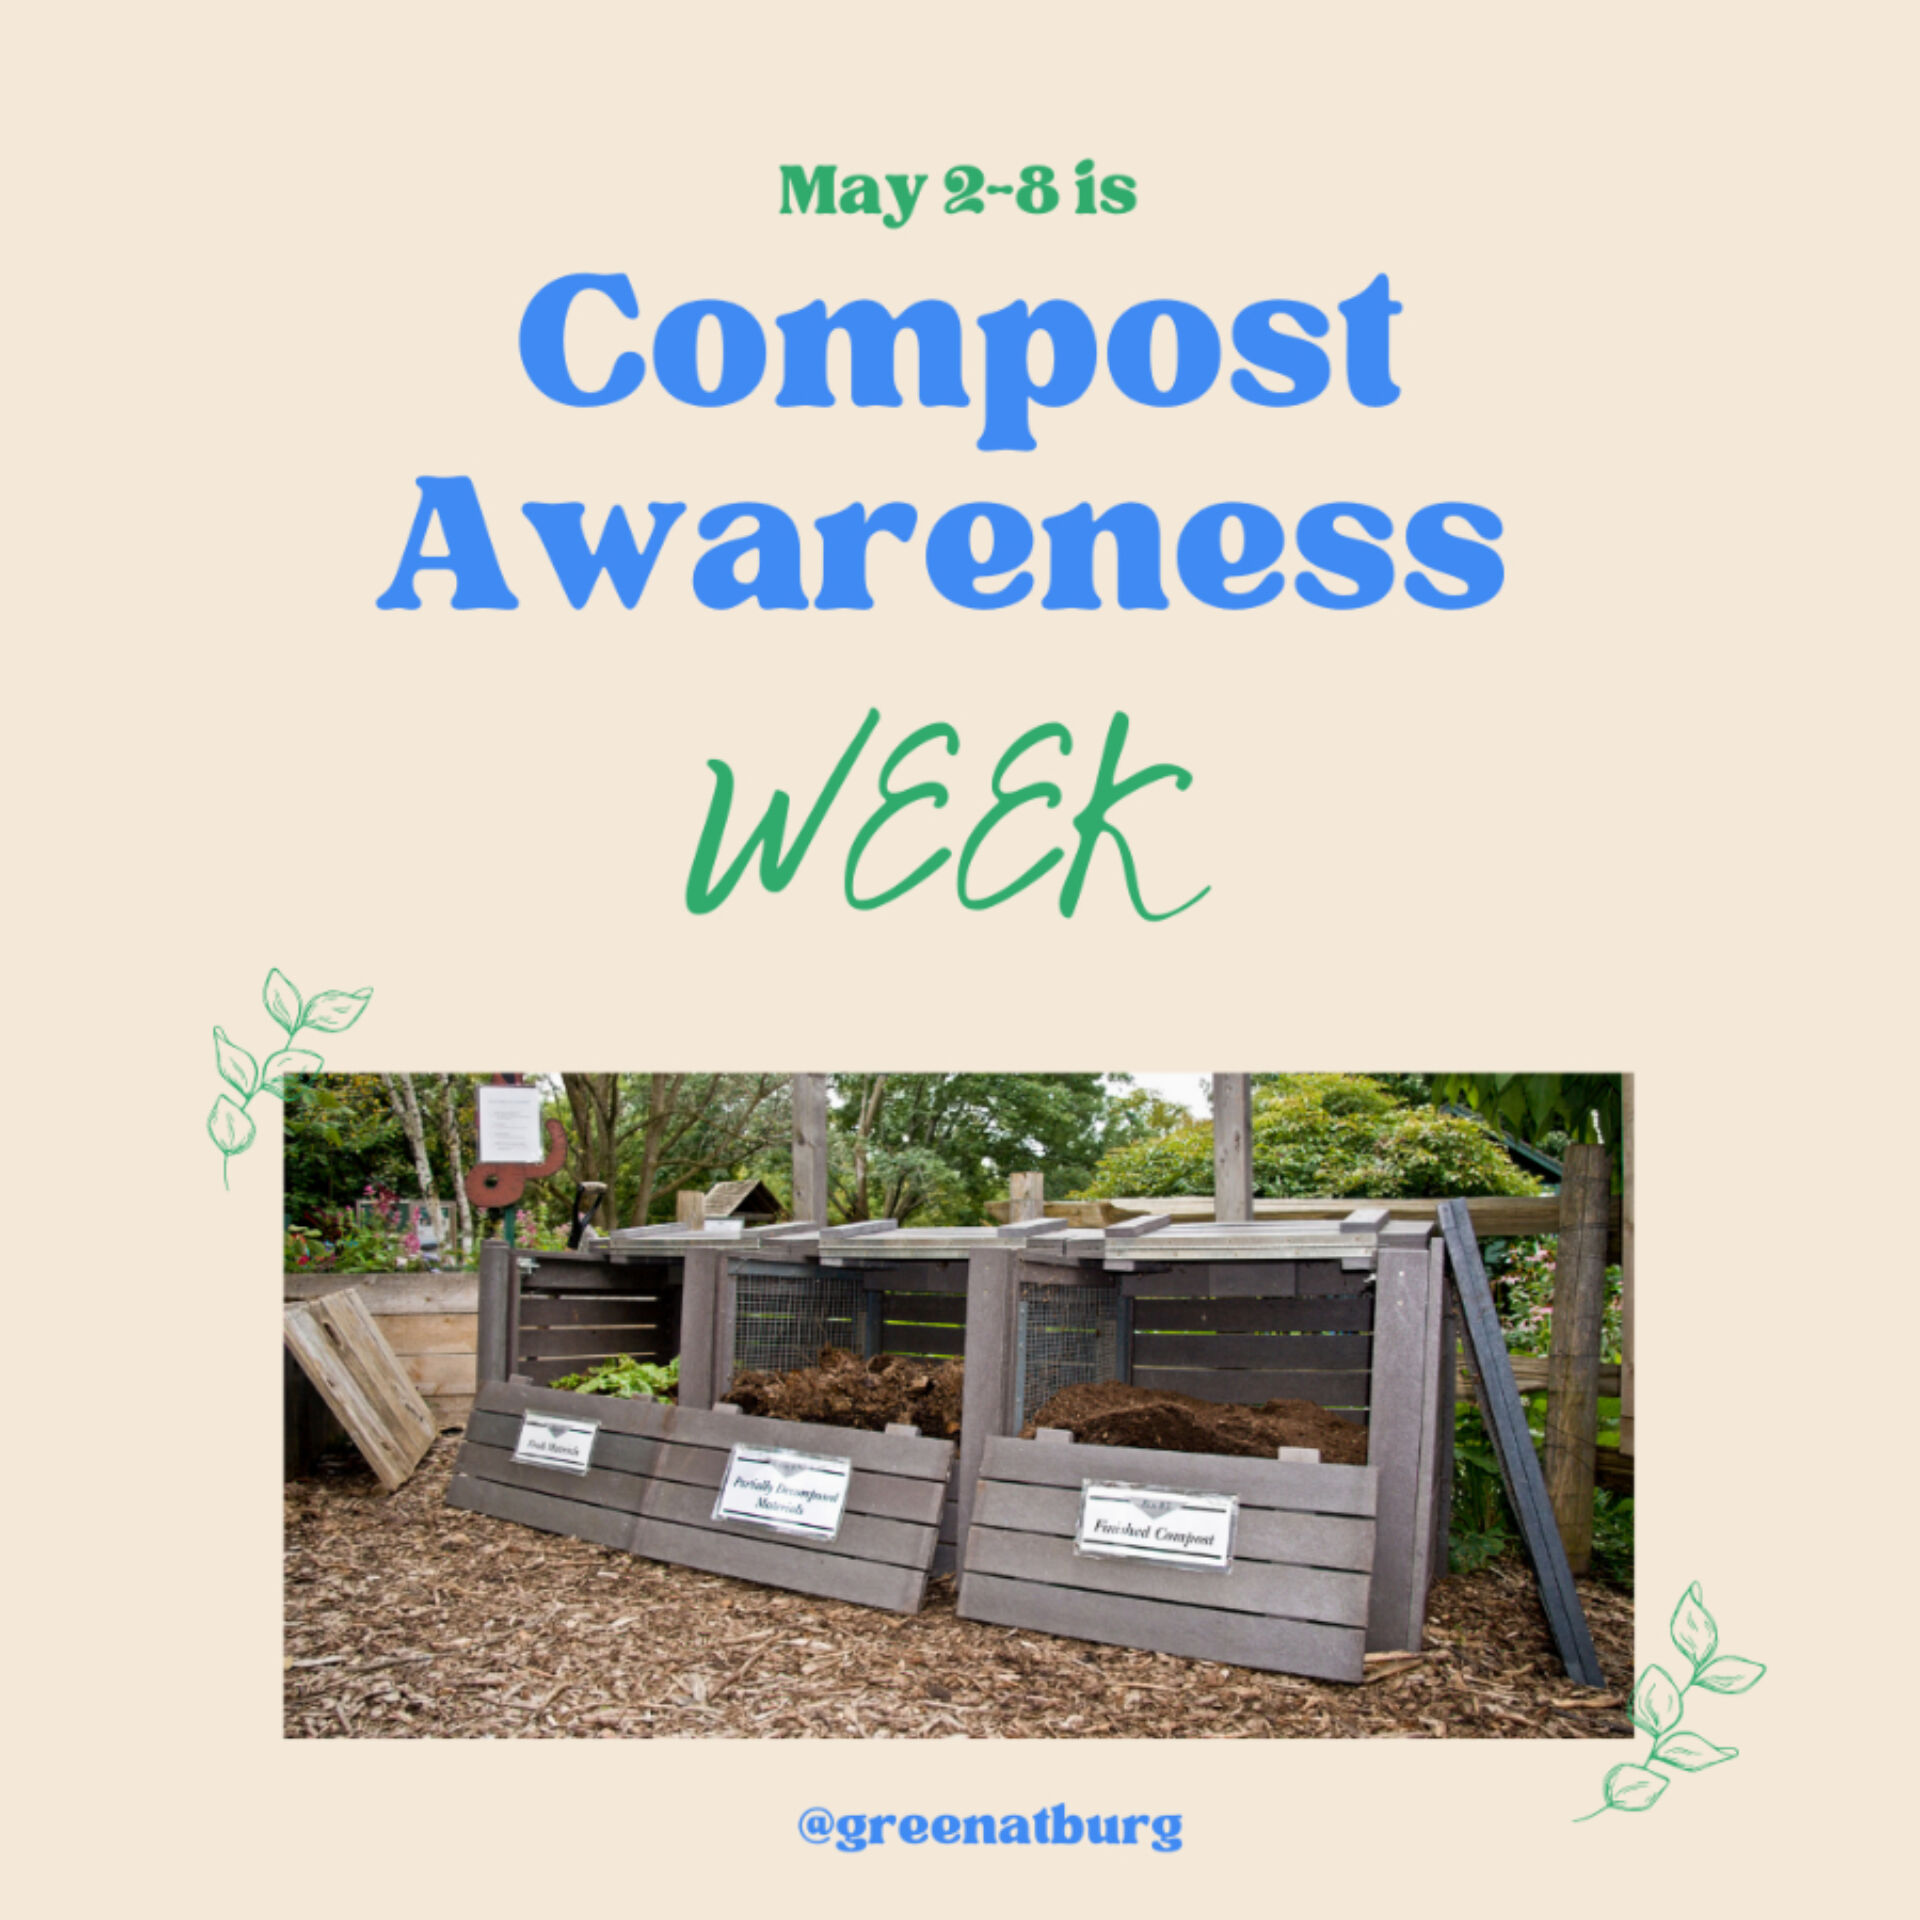 Compost awareness